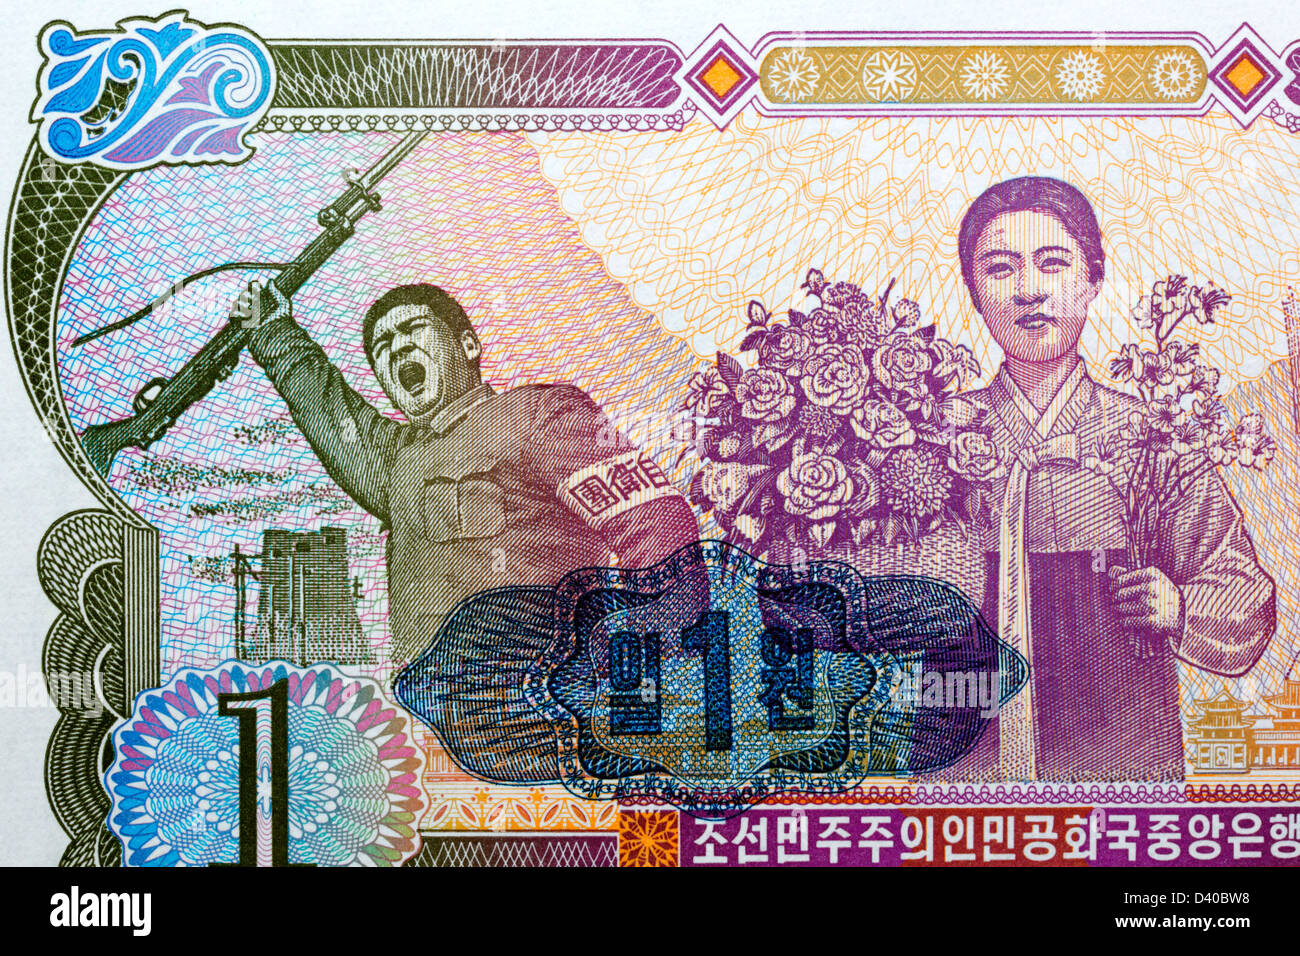 Soldato e donna da 1 ha vinto la banconota, Corea del Nord, 1978 Foto Stock